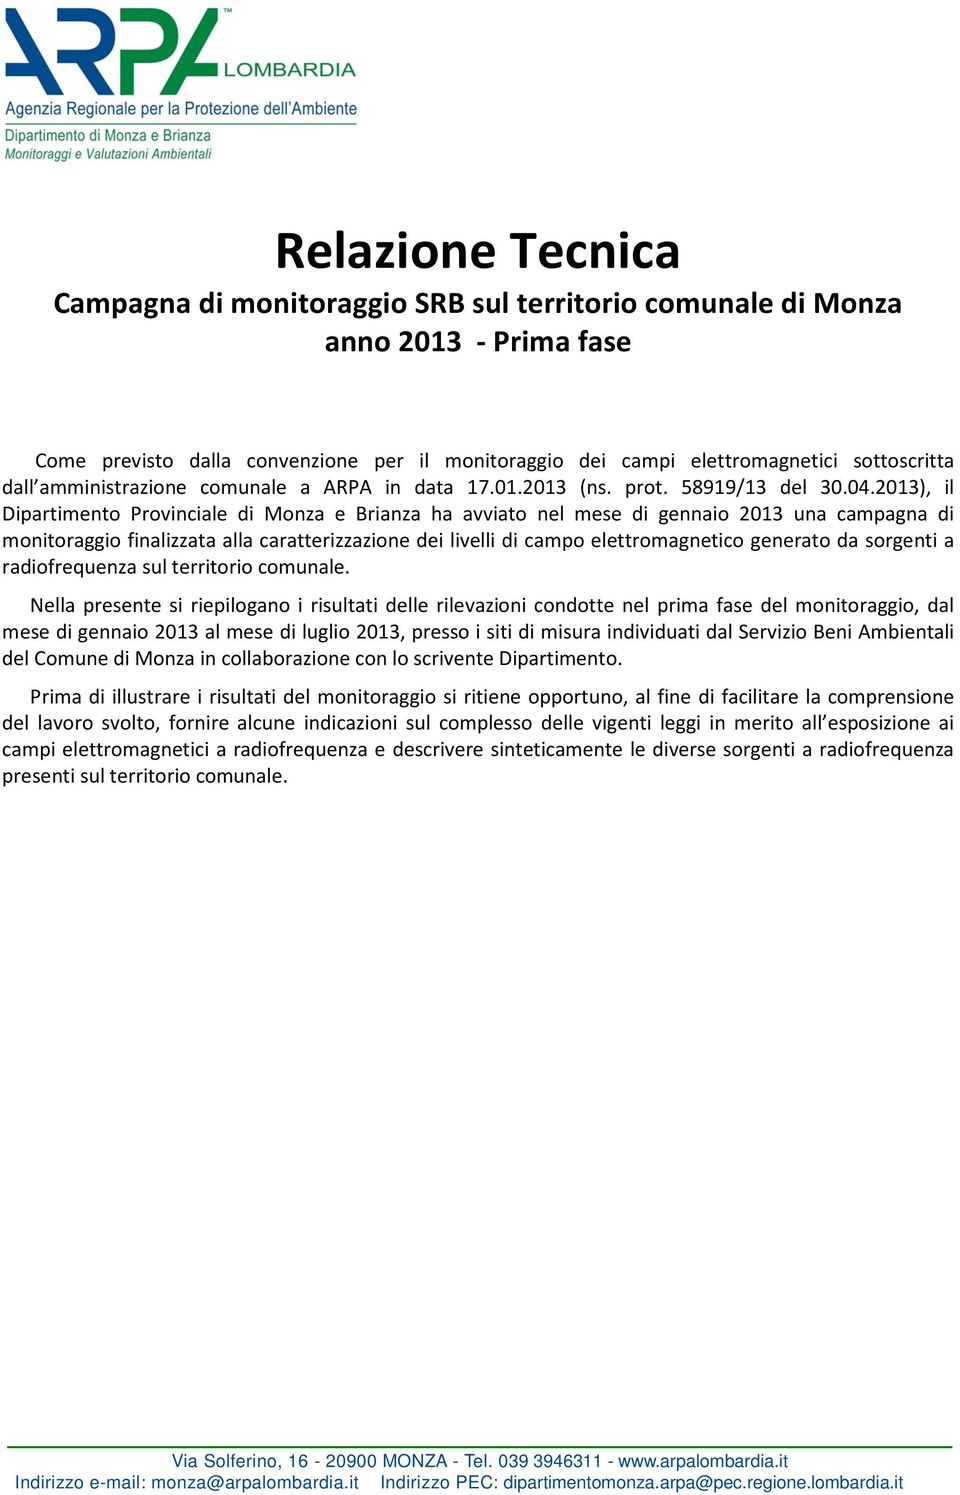 2013), il Dipartimento Provinciale di Monza e Brianza ha avviato nel mese di gennaio 2013 una campagna di monitoraggio finalizzata alla caratterizzazione dei livelli di campo elettromagnetico